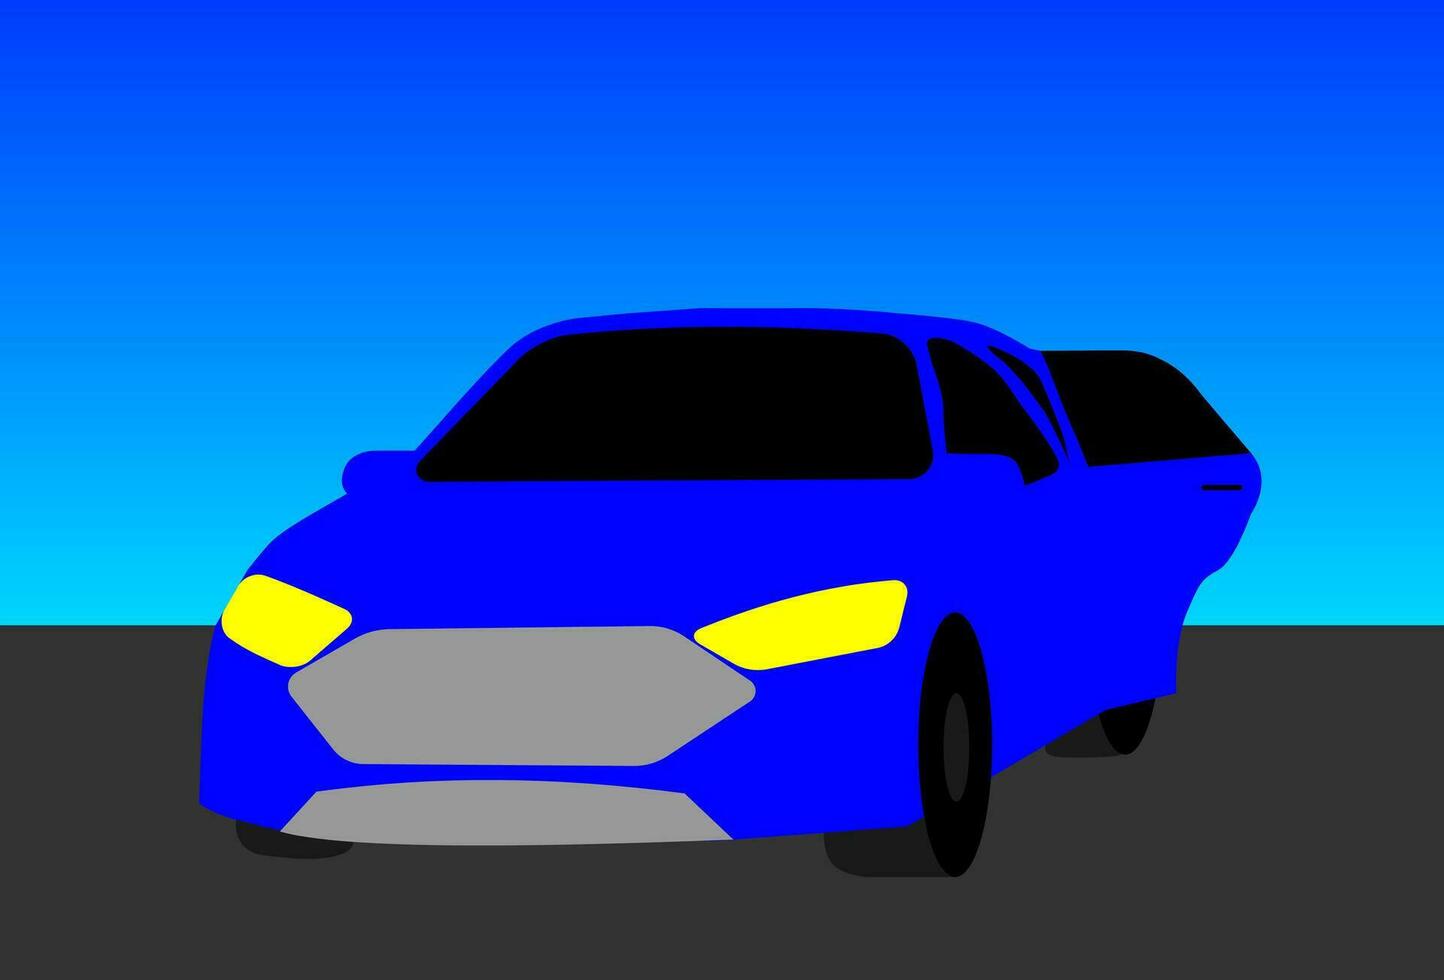 Blue Sedan Car On The Street And Blue Sky Background vector